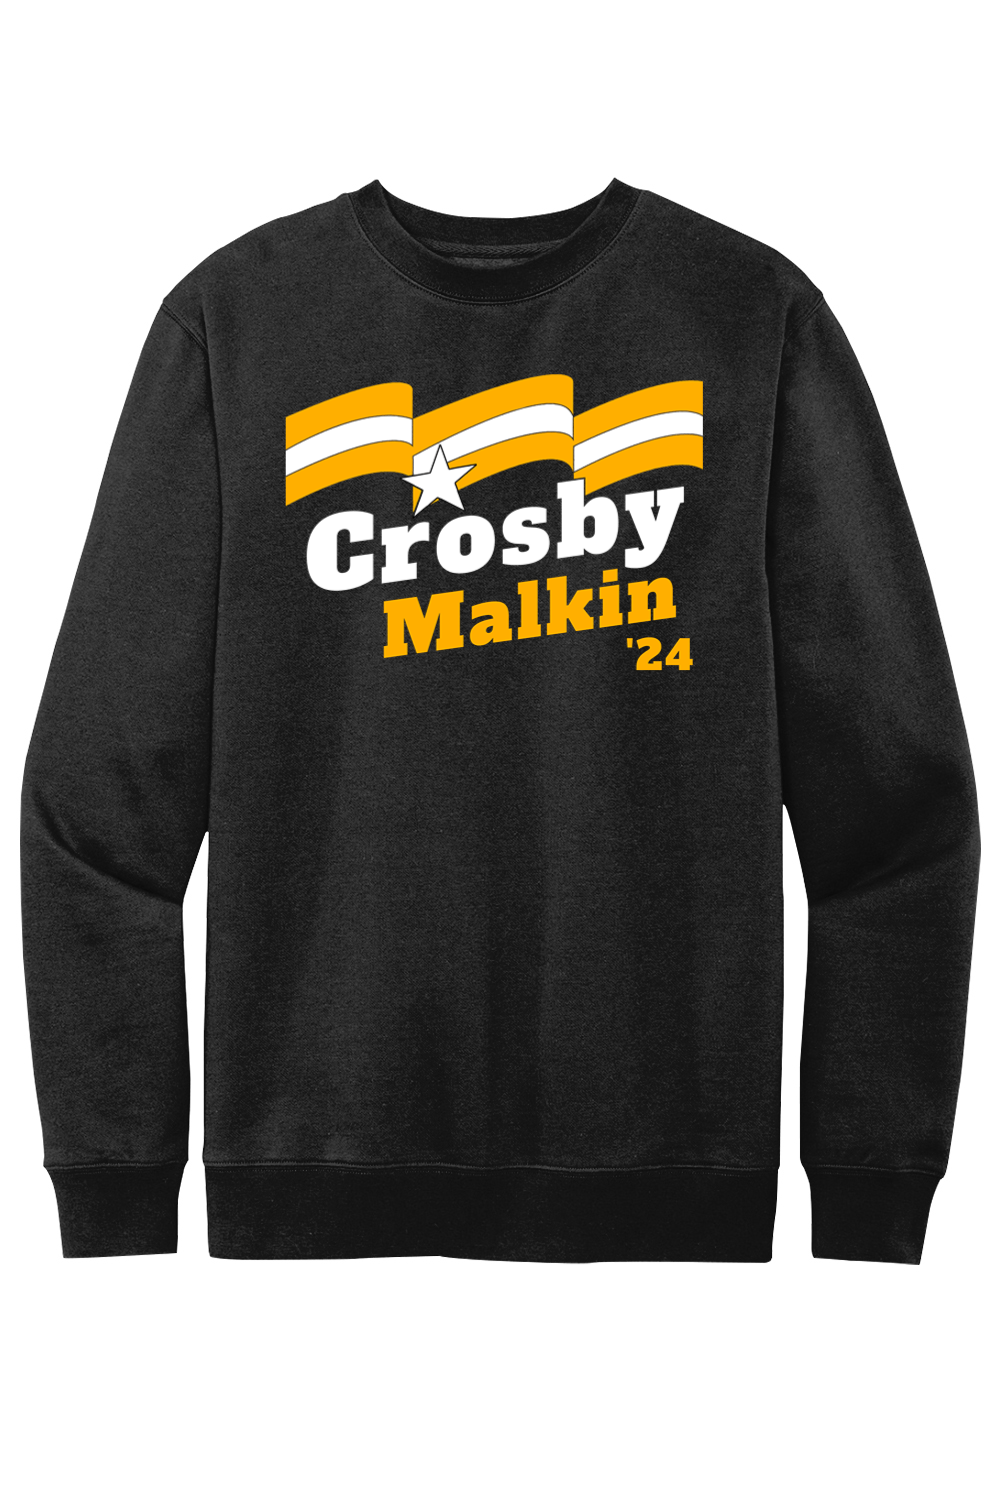 Crosby Malkin '24 - Fleece Crewneck Sweatshirt - Yinzylvania